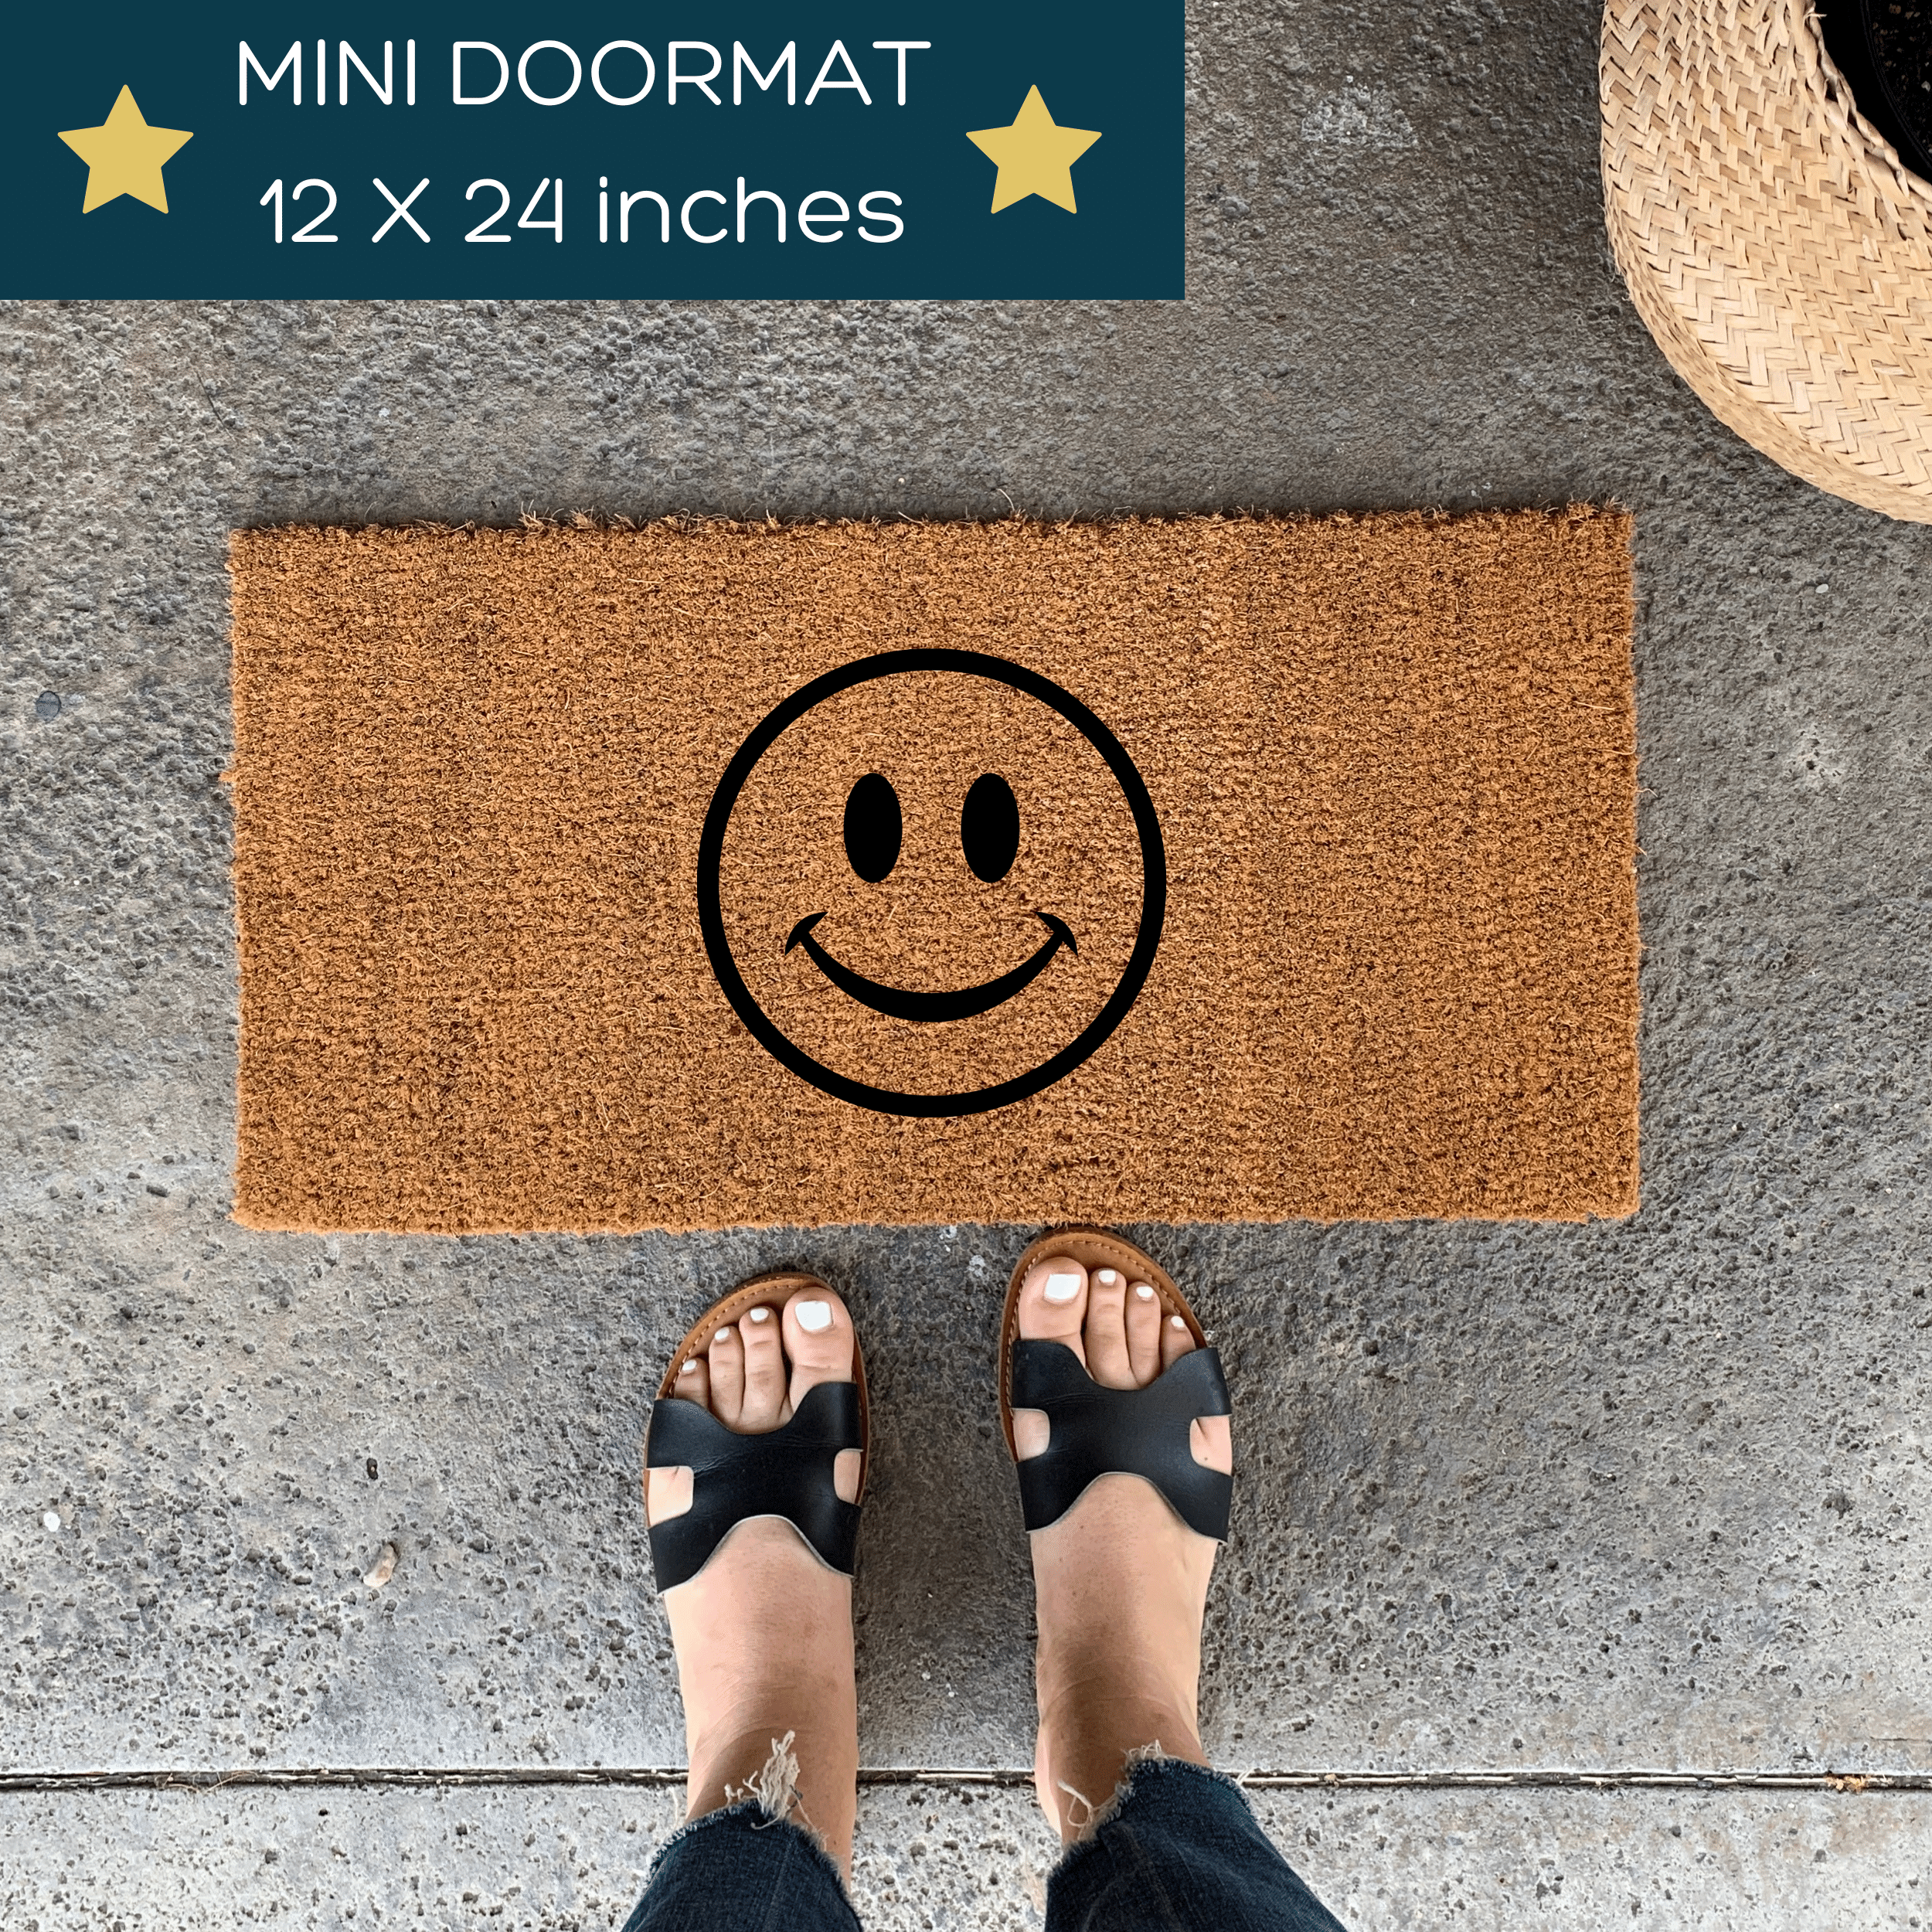 Custom Mini Doormat - Small Playhouse Doormat 12 x 24